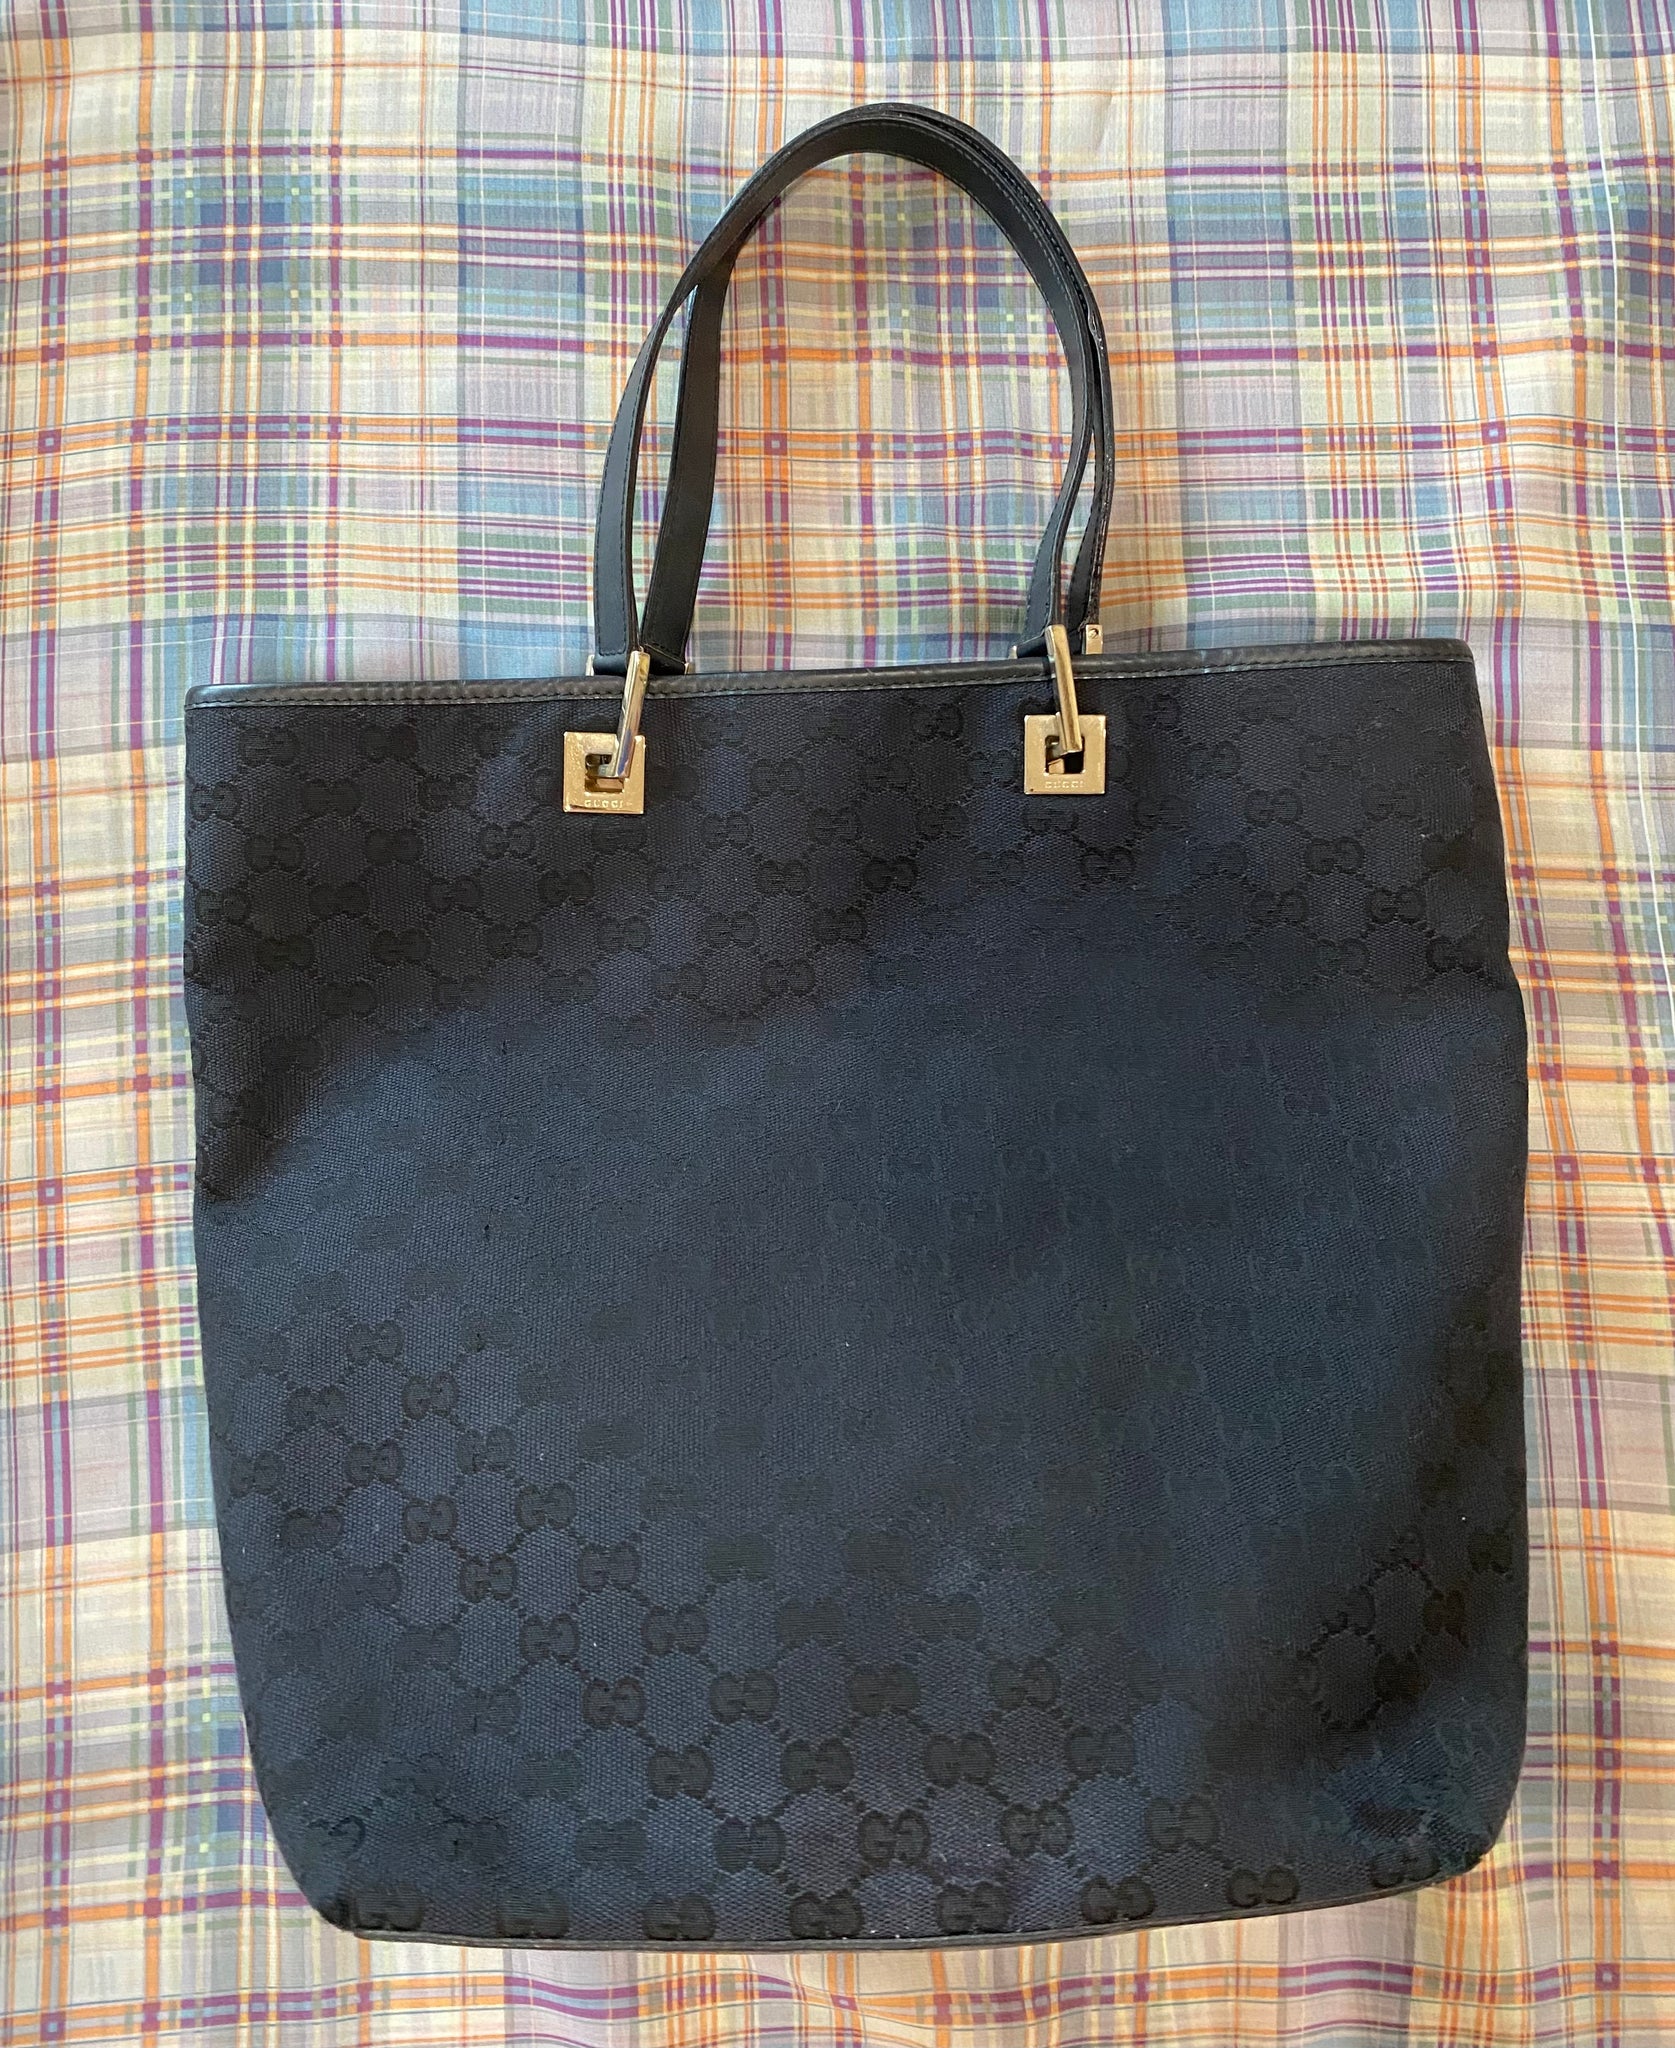 Leather Printed Gucci Handbag at Rs 200/piece in Varanasi | ID:  2851061269030